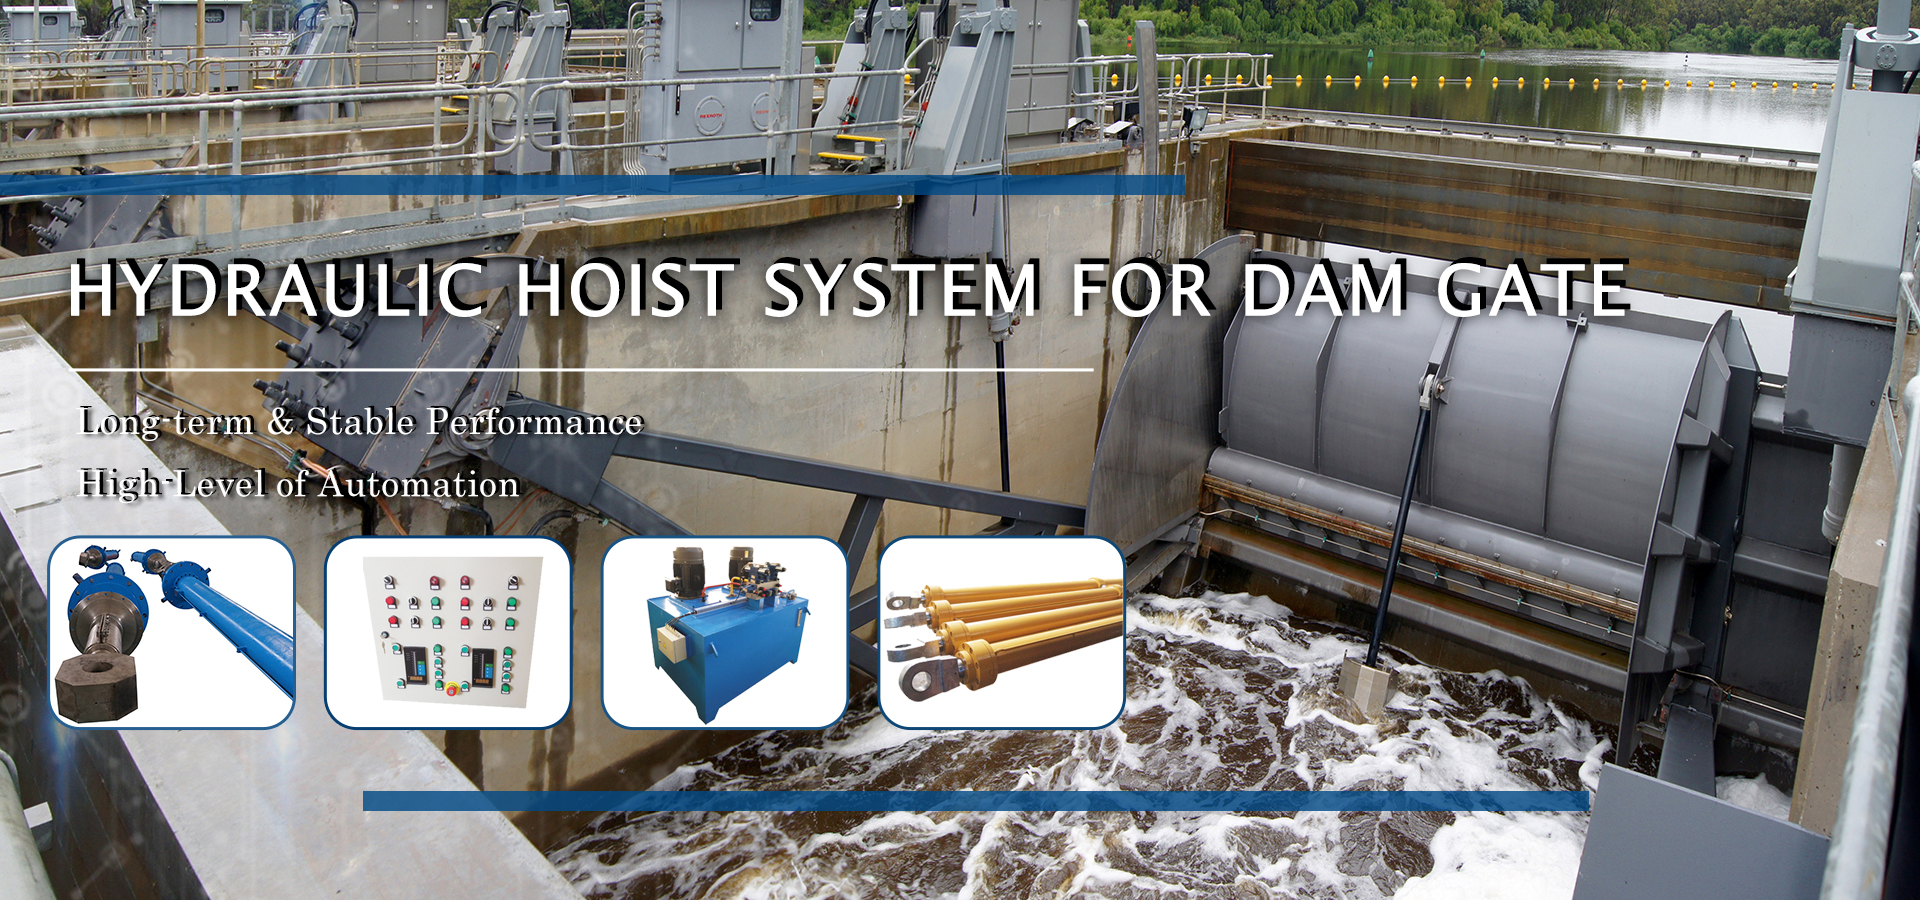 Hydraulic Hoist System for Dam Gate -- UNLE Hydraulic